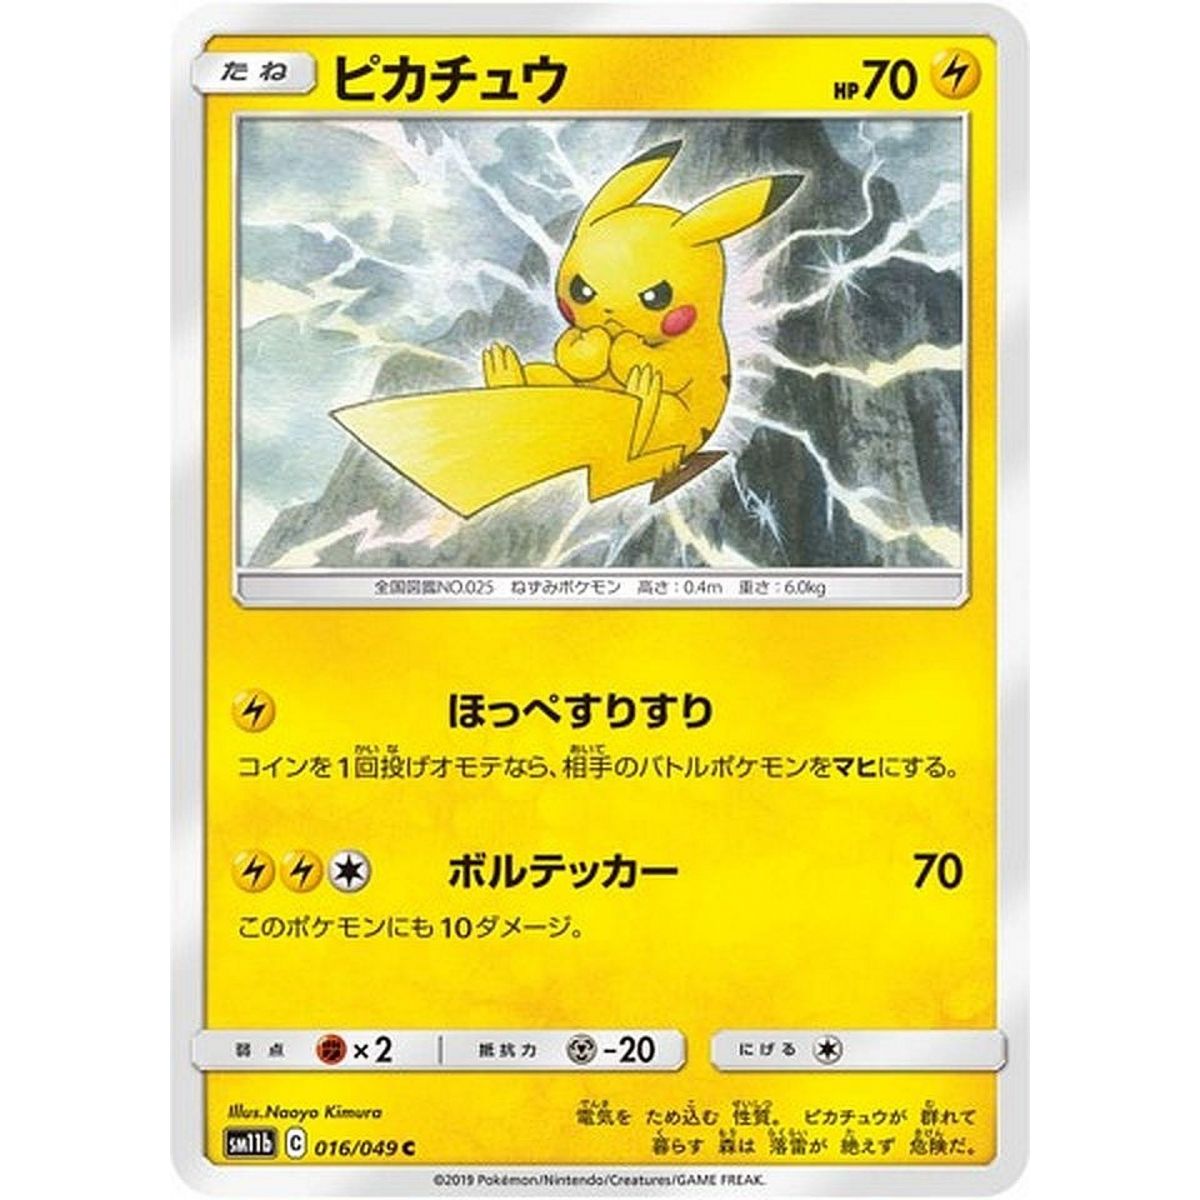 Pikachu 016/049 Dream League Commune Unlimited Japanese